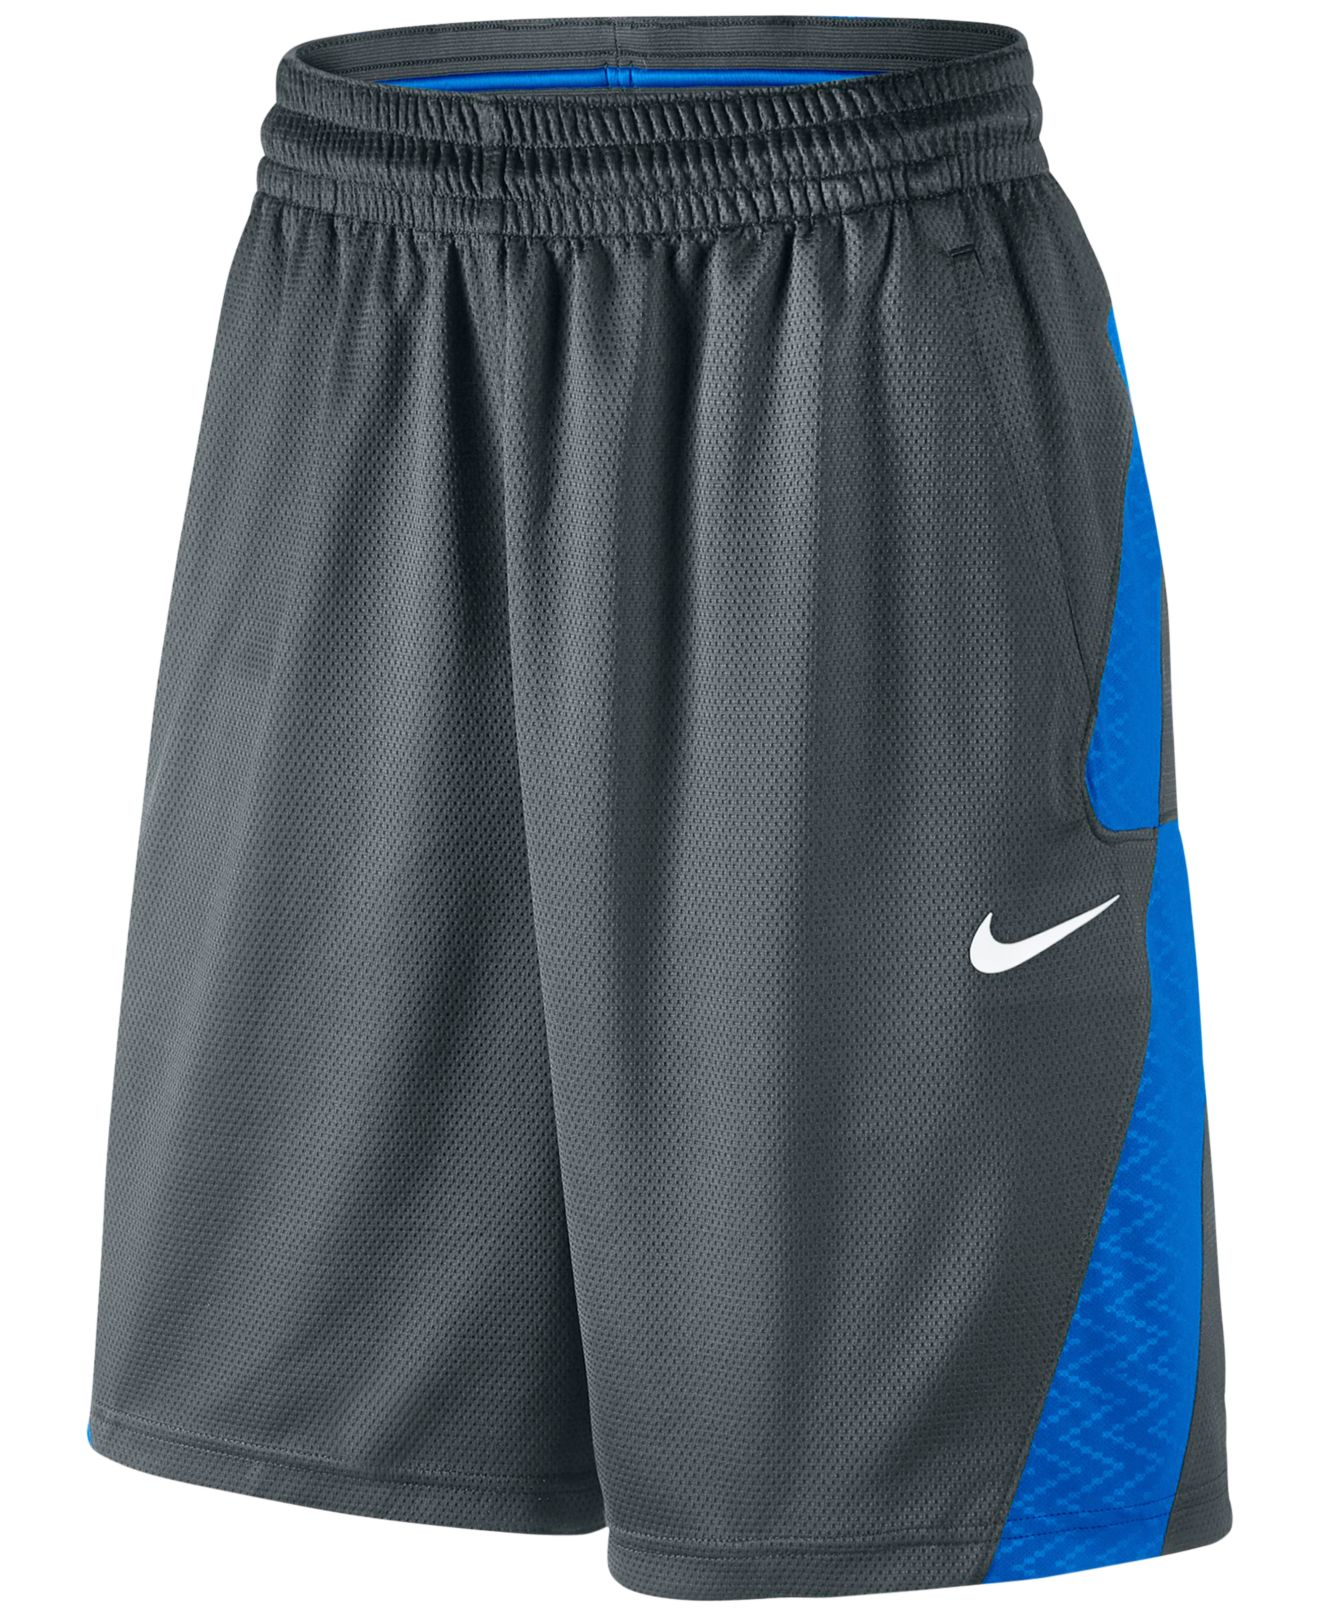 Nike Shorts For Men Basketball 116